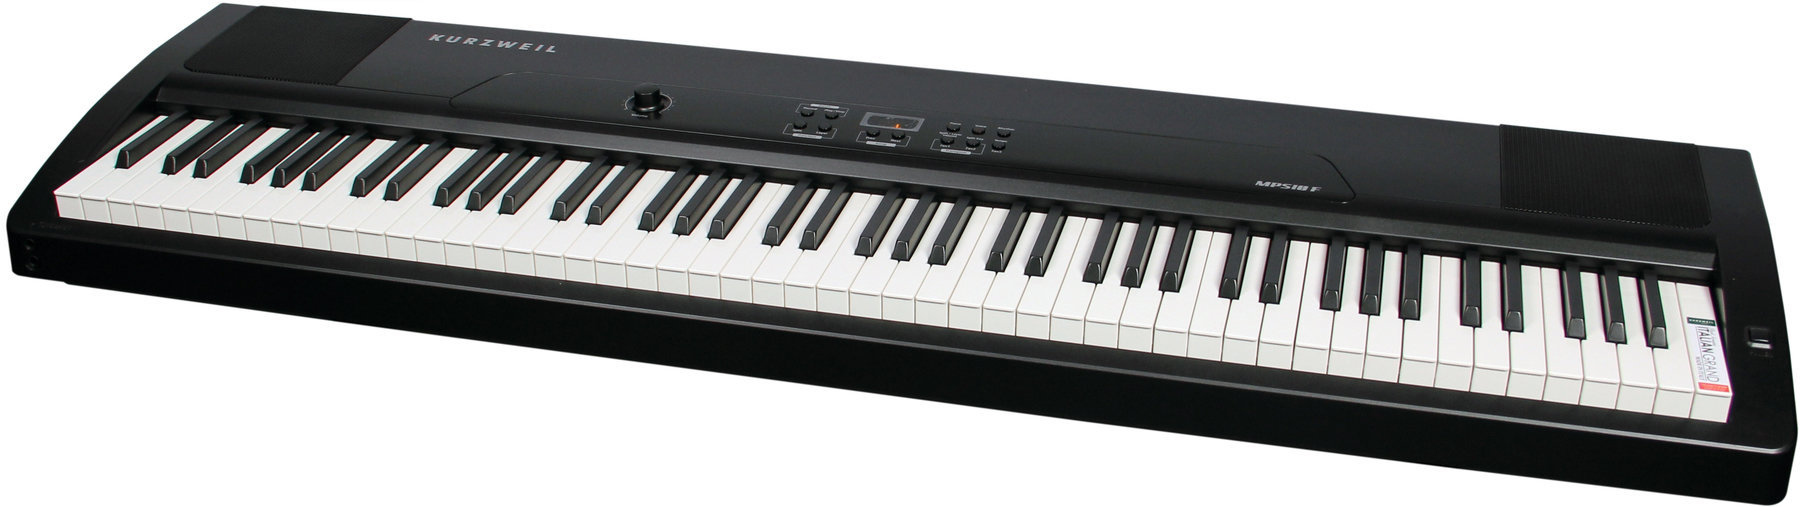 Piano de scène Kurzweil MPS10F Portable Digital Piano